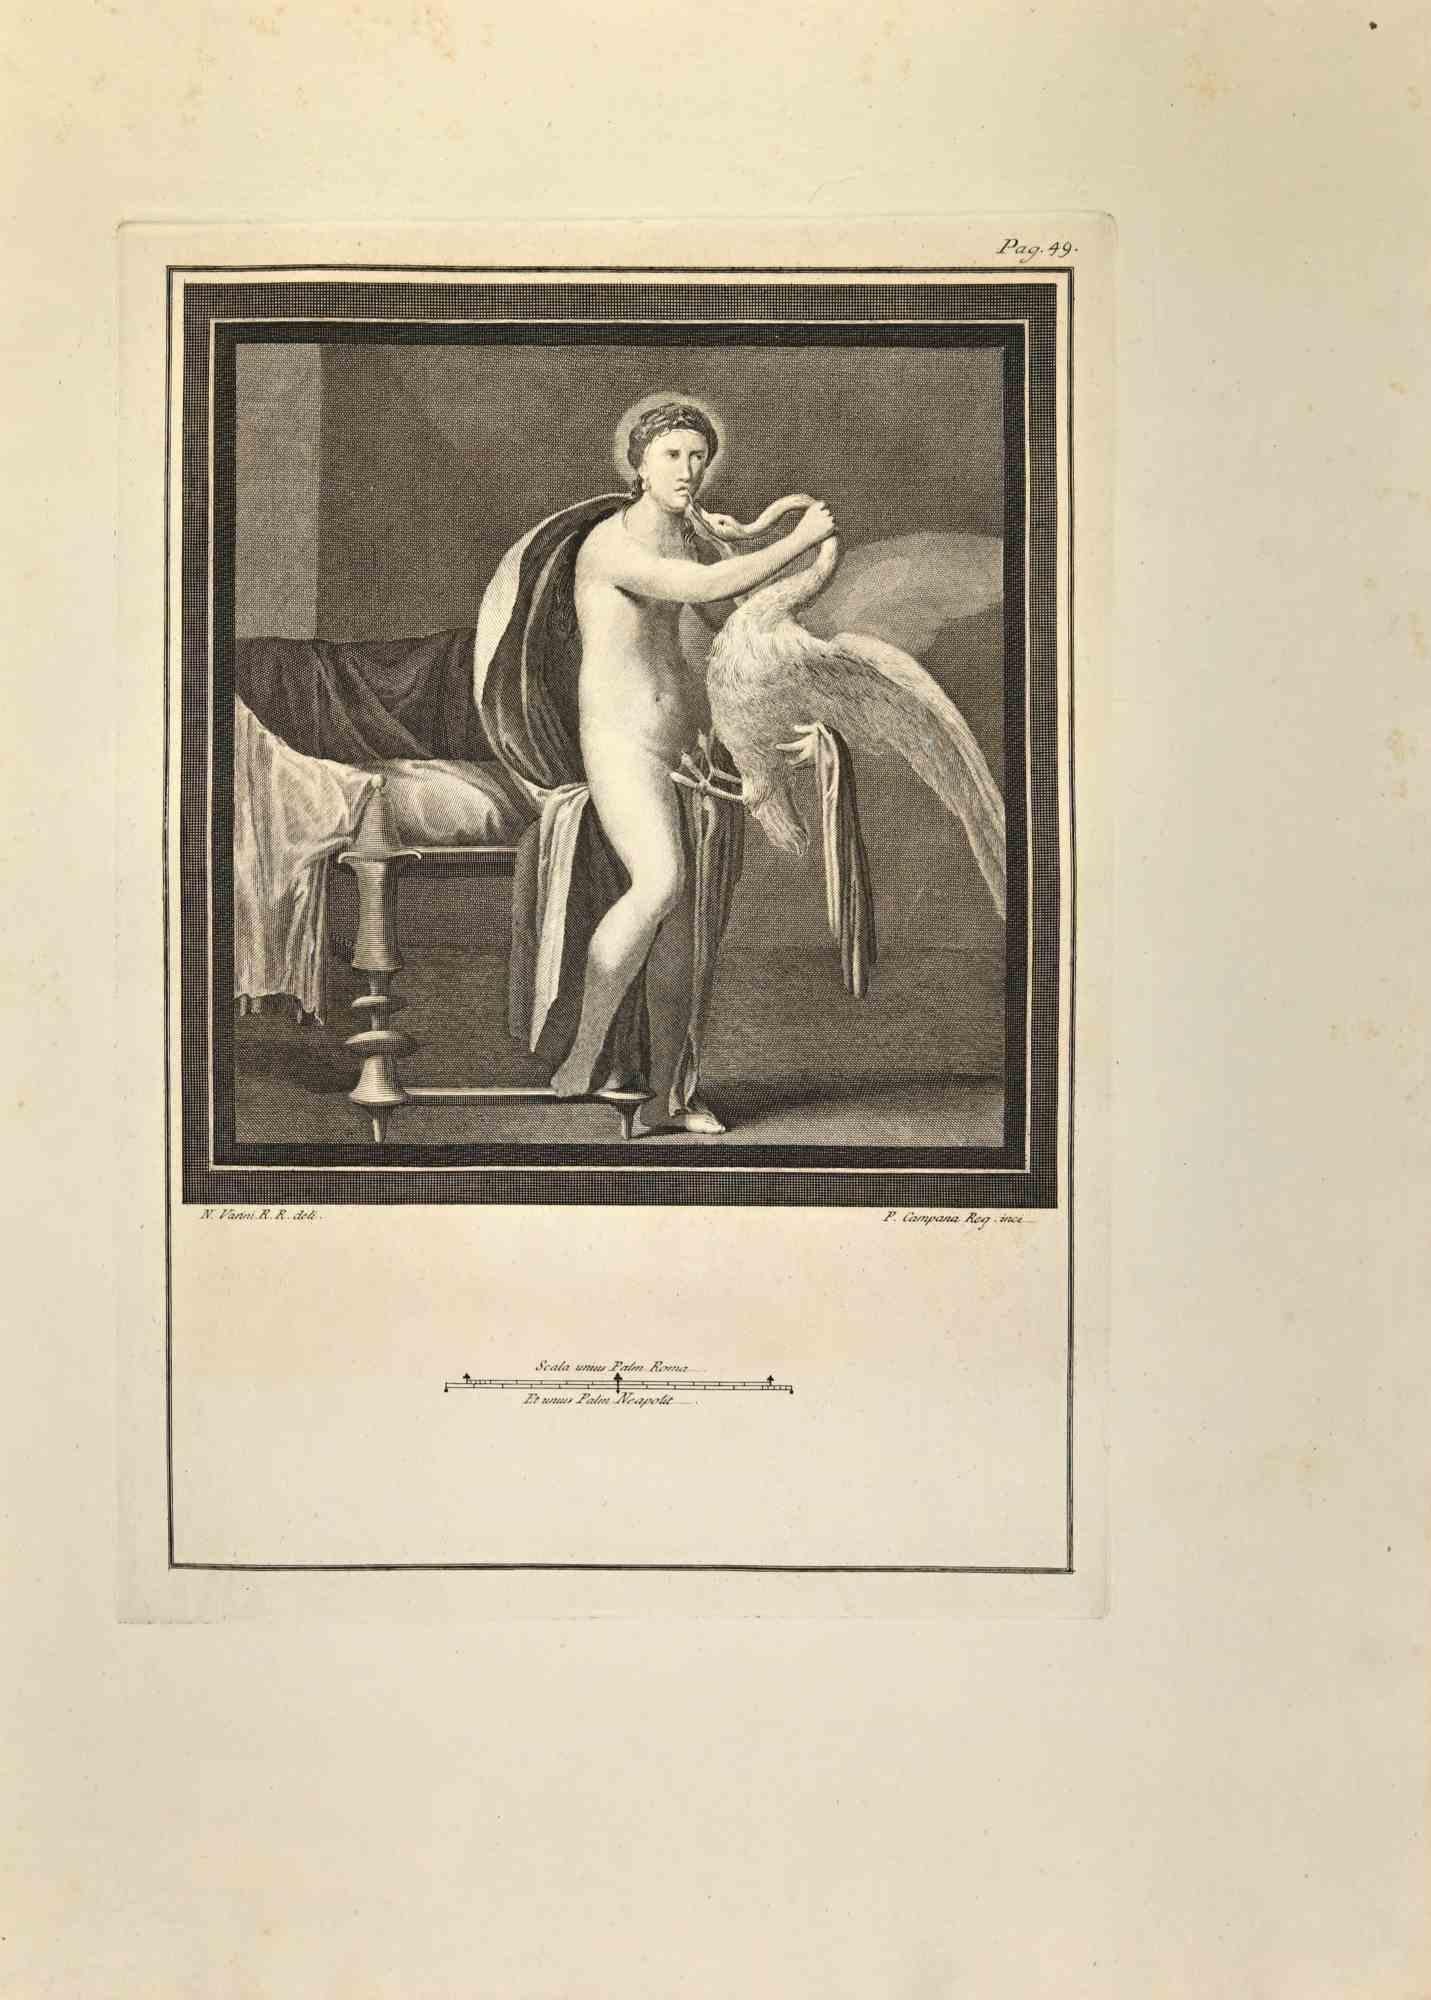 Leda mit dem Schwan aus den "Altertümern von Herculaneum"  ist eine Radierung auf Papier von Ferdinando Campana aus dem 18. Jahrhundert.

Signiert auf der Platte.

Gute Bedingungen.

Die Radierung gehört zu der Druckserie "Antiquities of Herculaneum